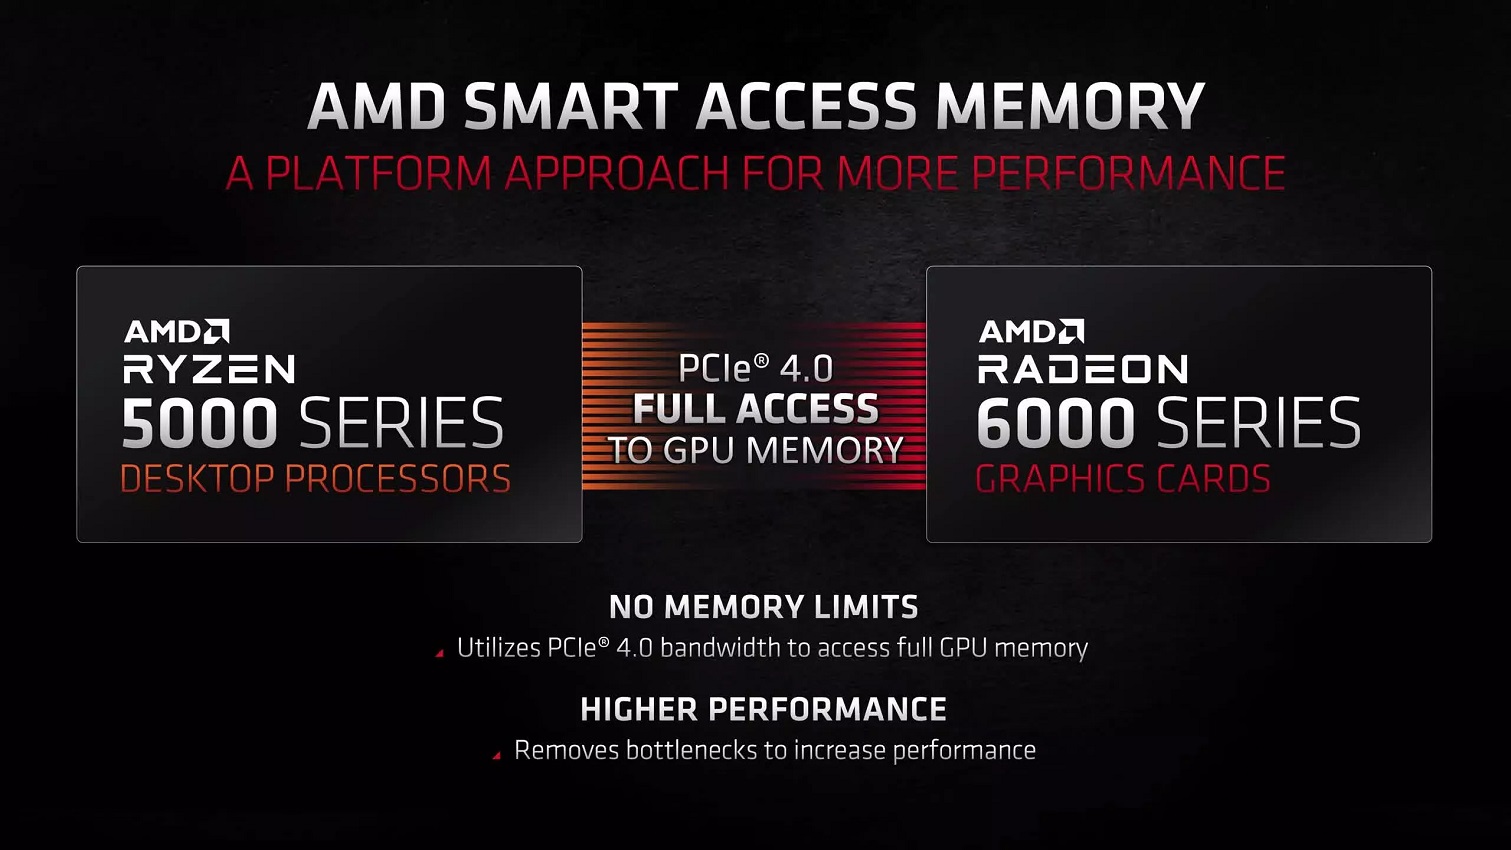 Kiểm chứng công nghệ AMD Smart Access Memory với 36 bài benchmark